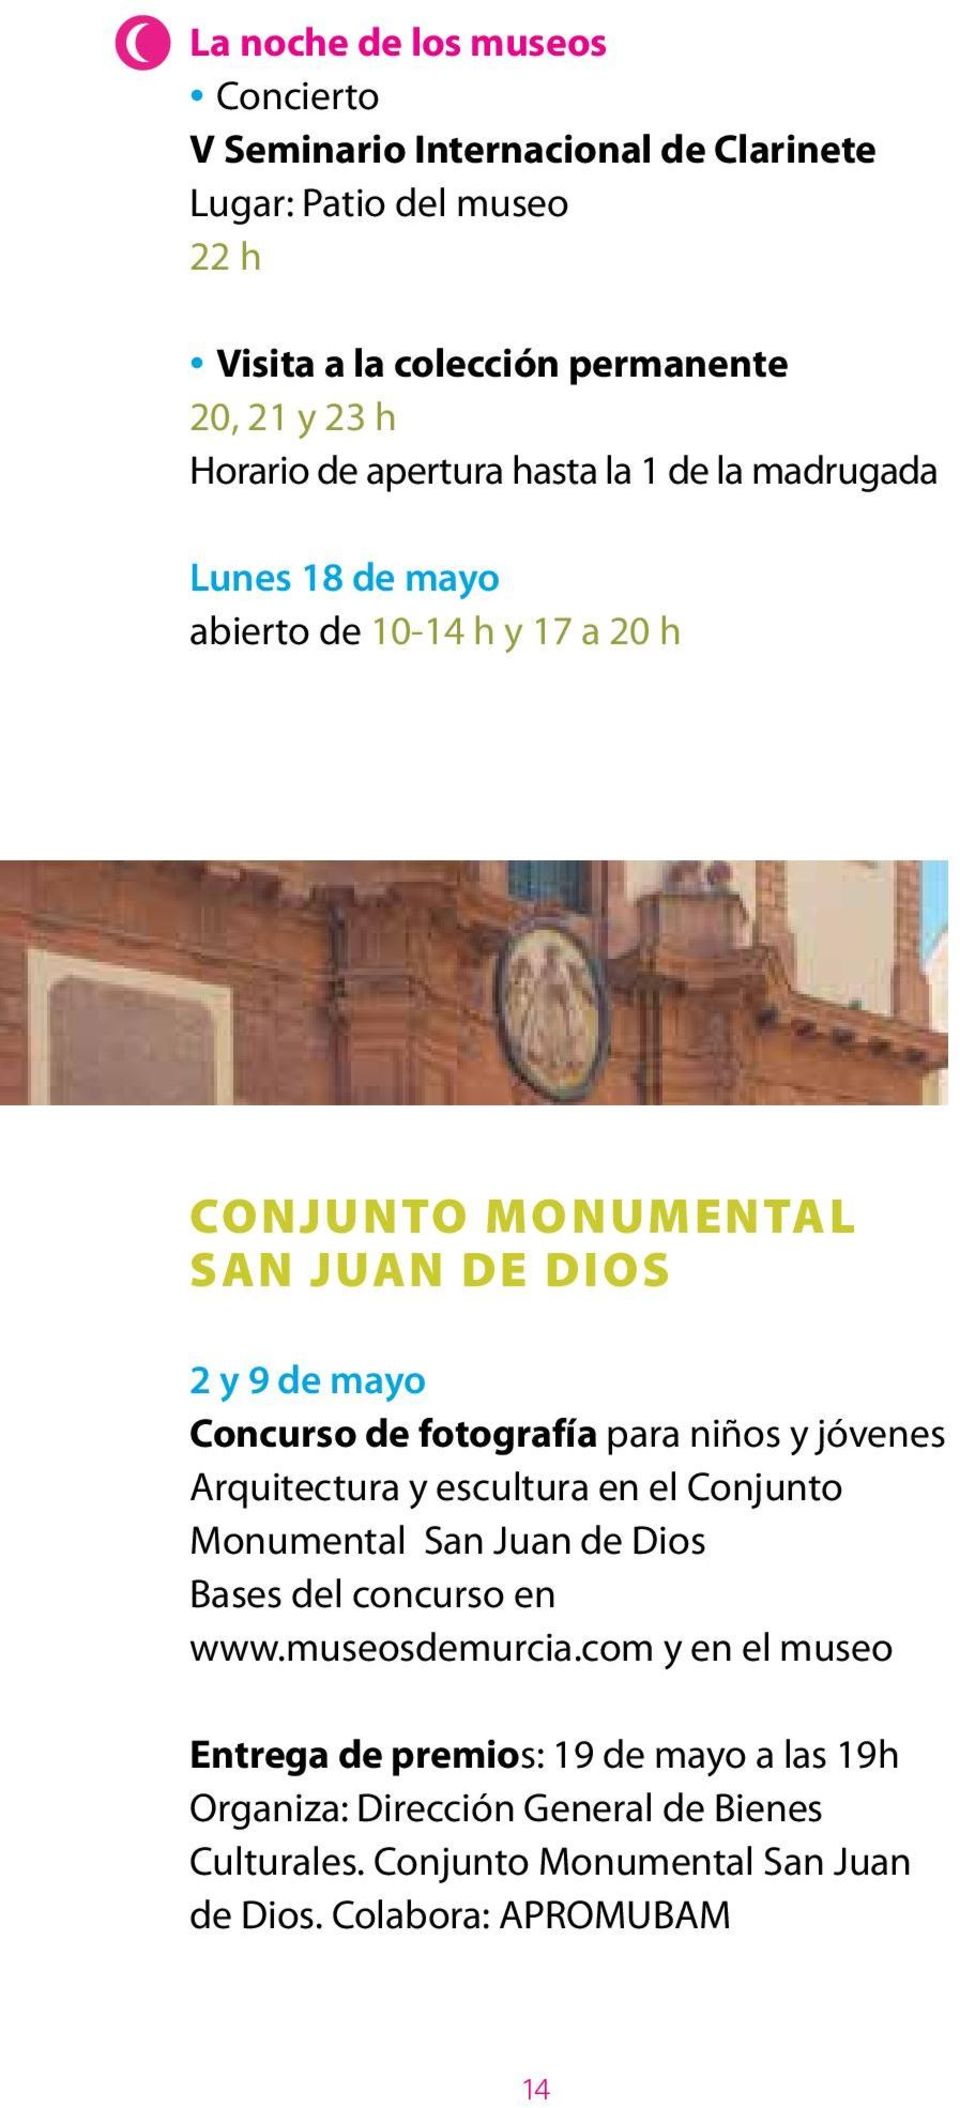 Concurso de fotografía para niños y jóvenes Arquitectura y escultura en el Conjunto Monumental San Juan de Dios Bases del concurso en www.museosdemurcia.